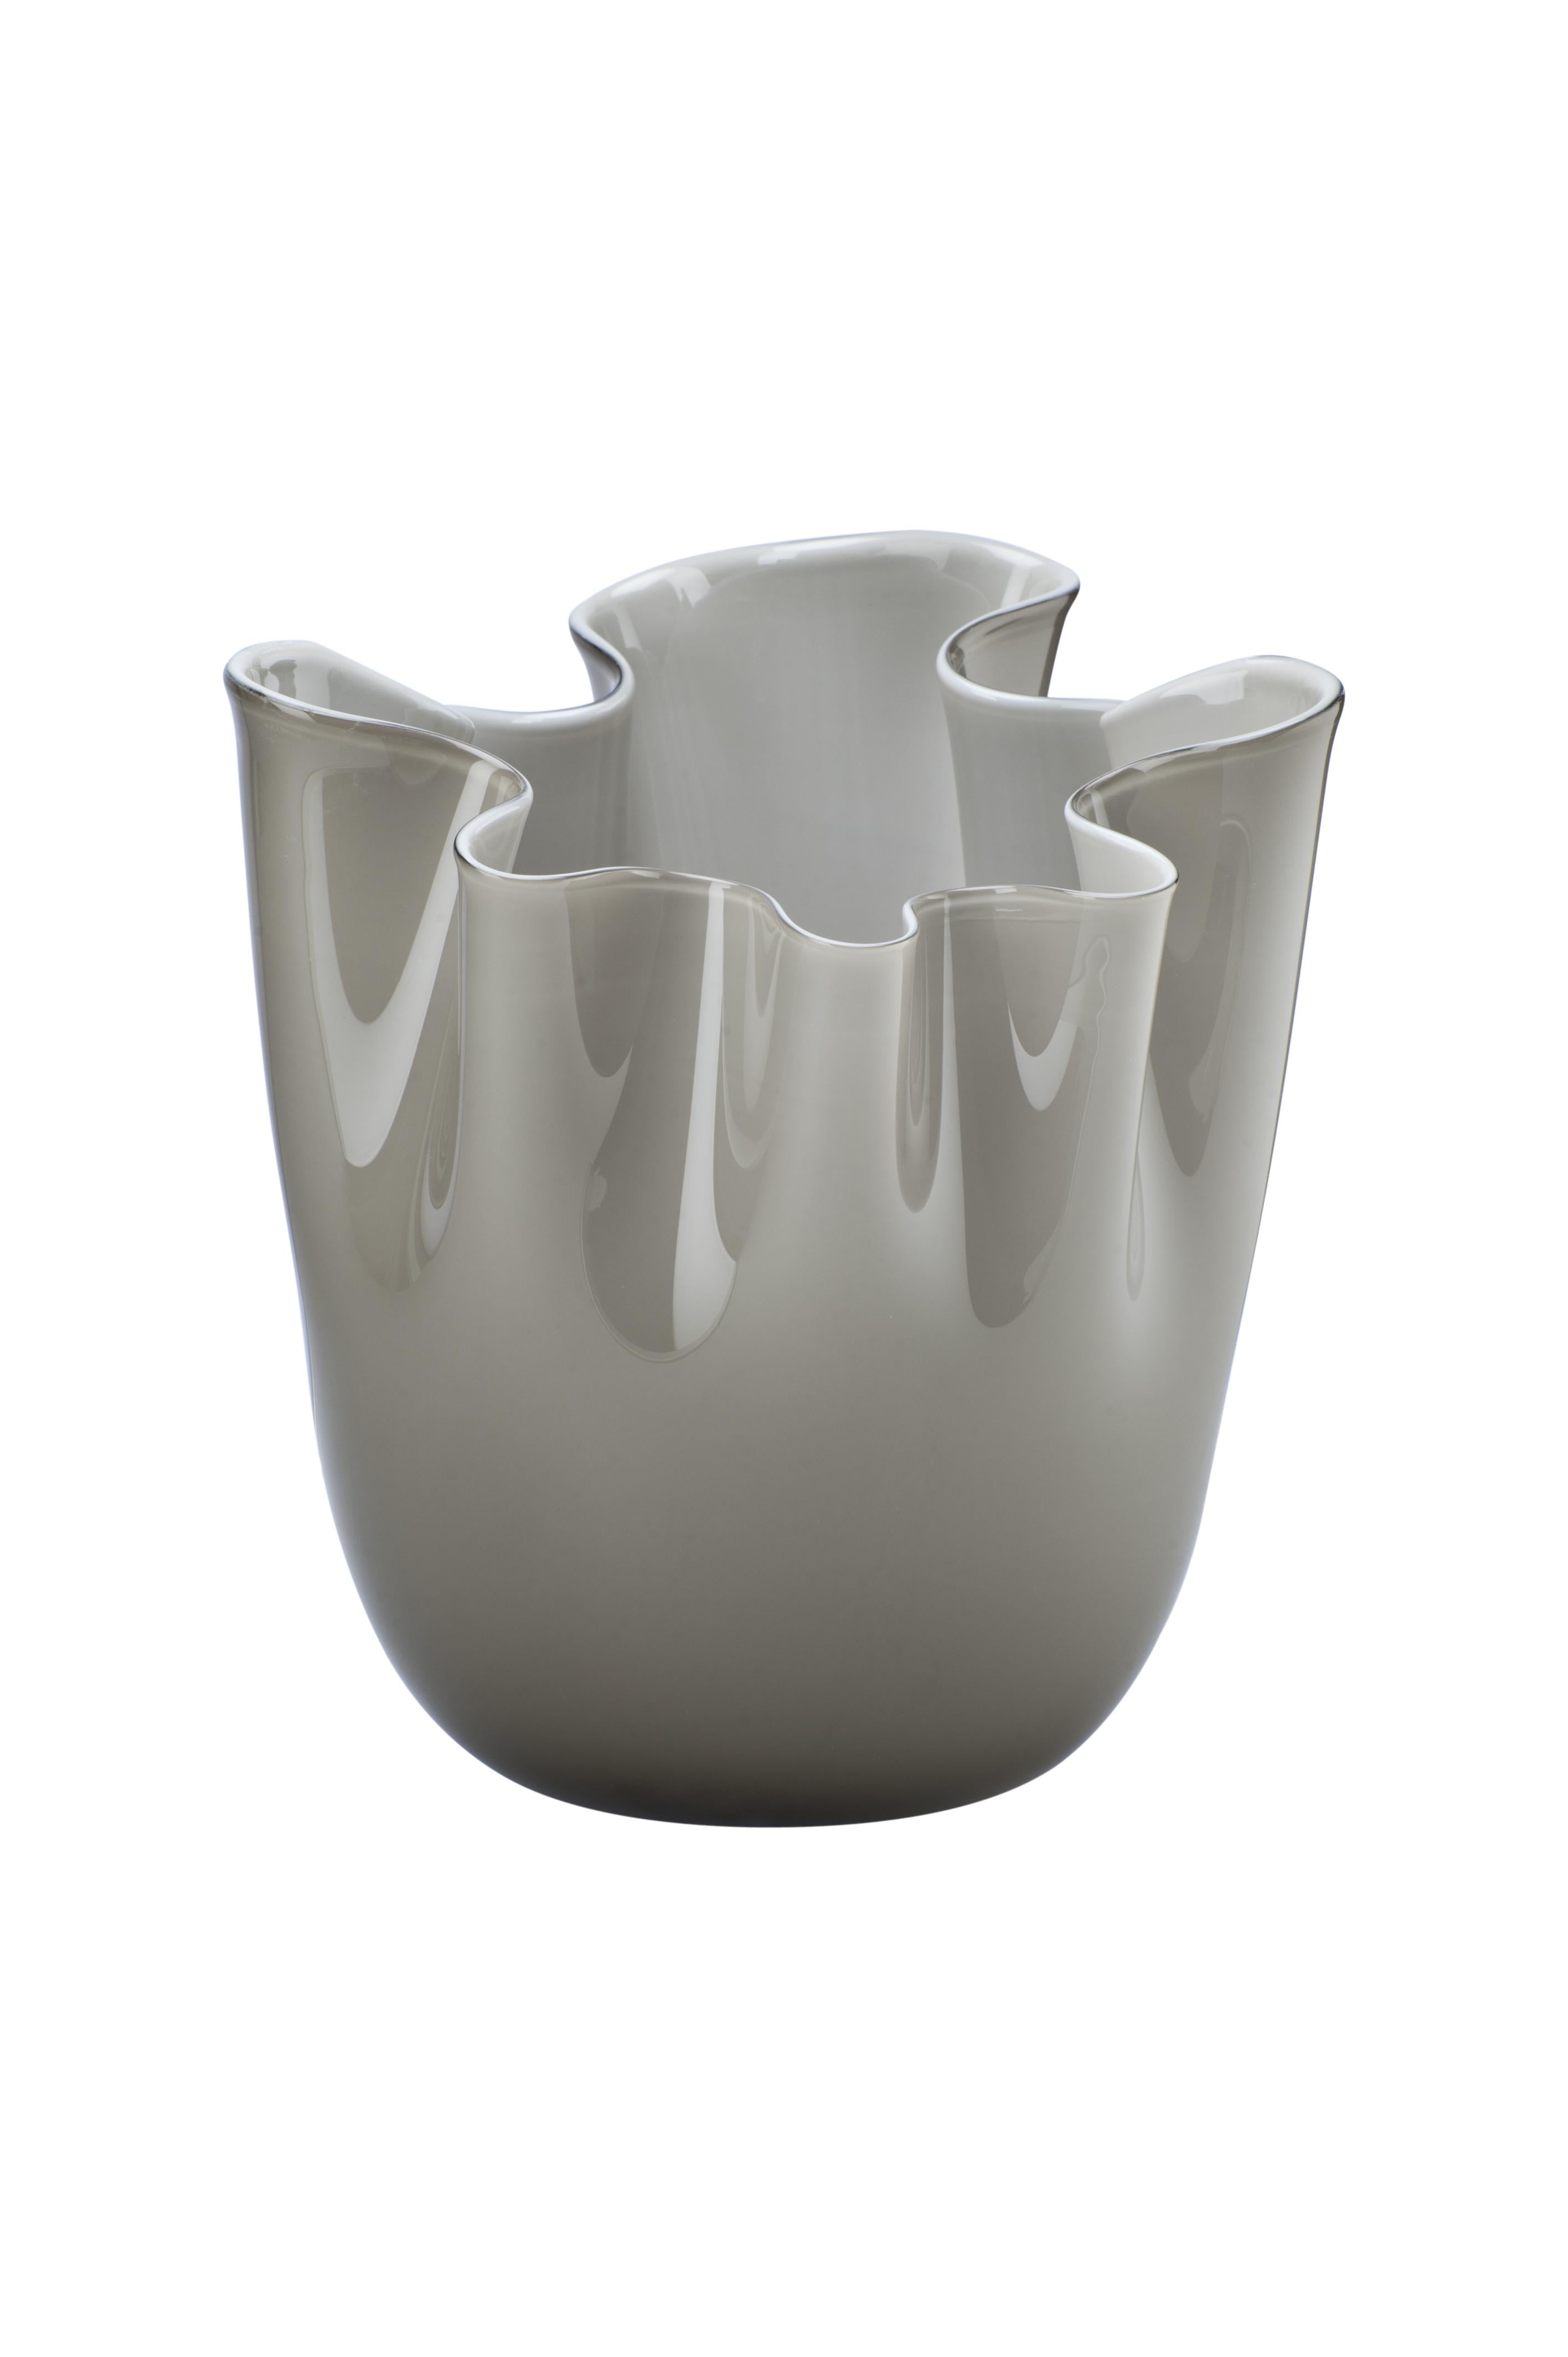 Le vase en verre Fazzoletto, conçu par Fulvio Bianconi et Paolo Venini et fabriqué par Venini, est disponible en trois tailles différentes. Original conçu en 1948. Utilisation intérieure uniquement.

Dimensions : Ø 23 cm, H 31 cm.